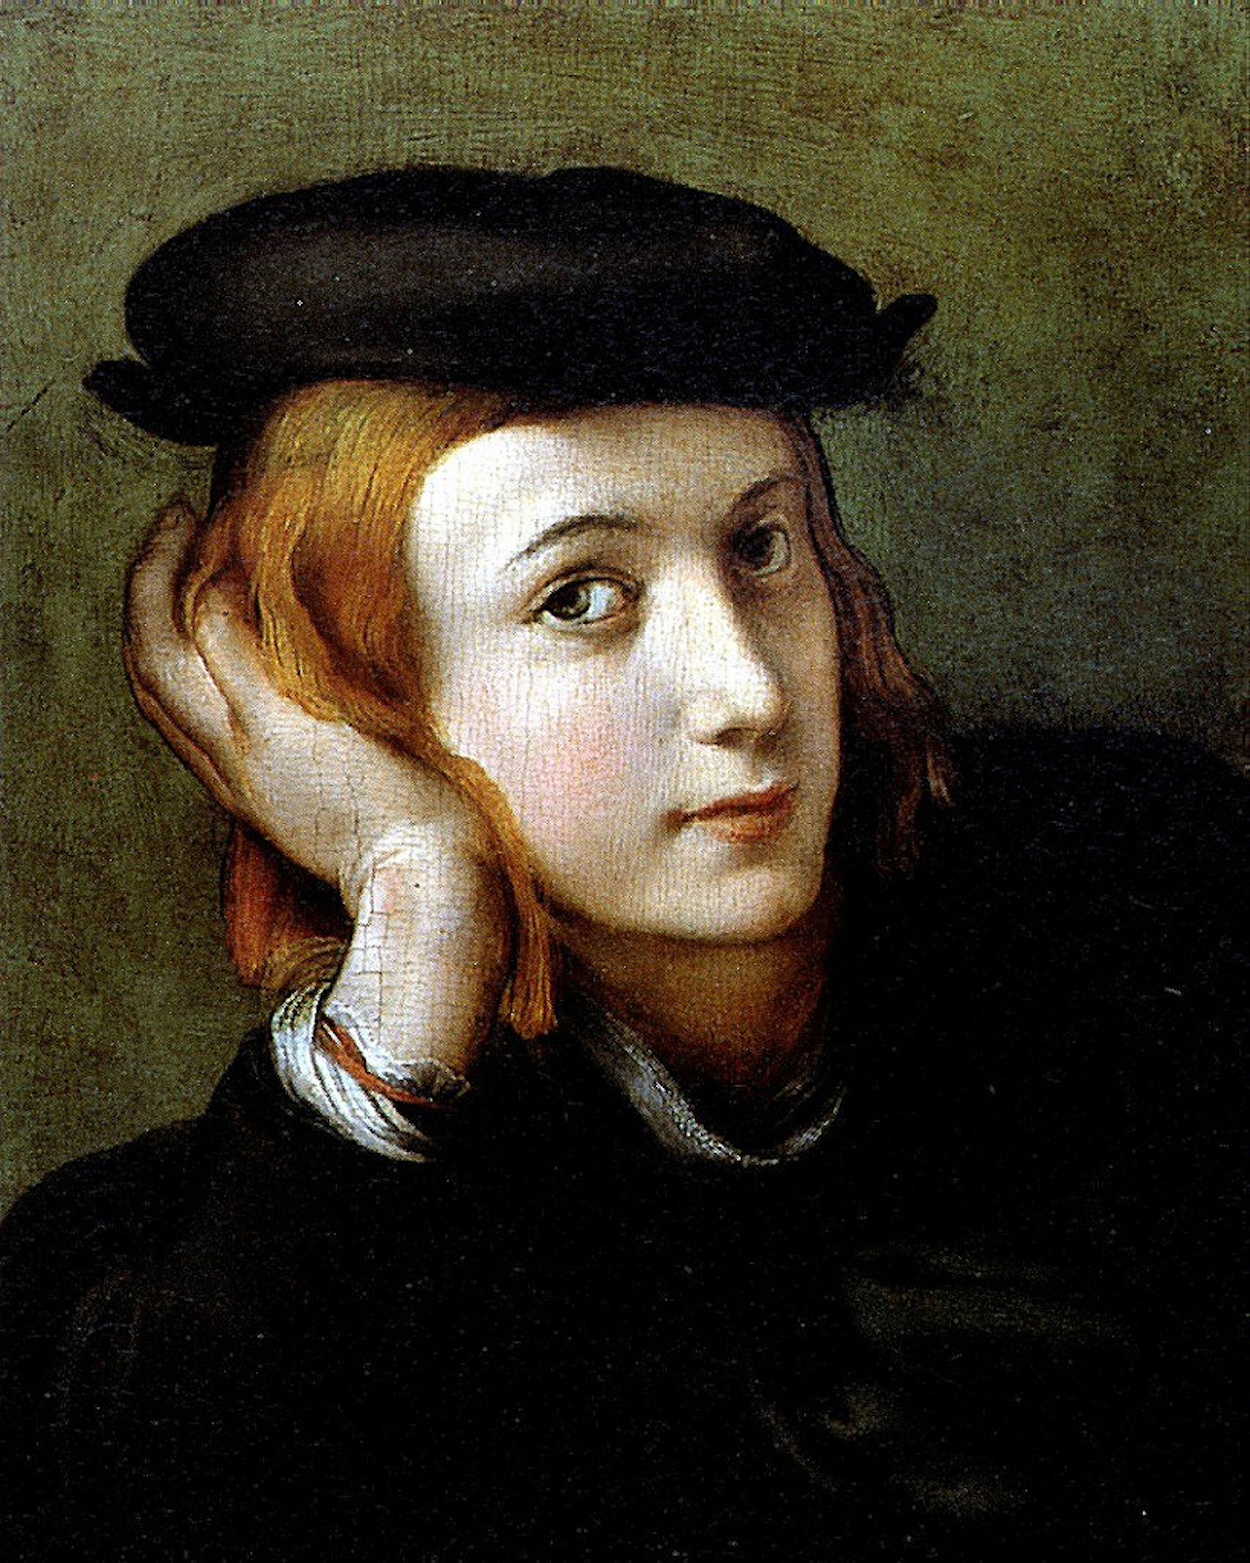 Antonio da Correggio - August 1489 - March 5, 1534